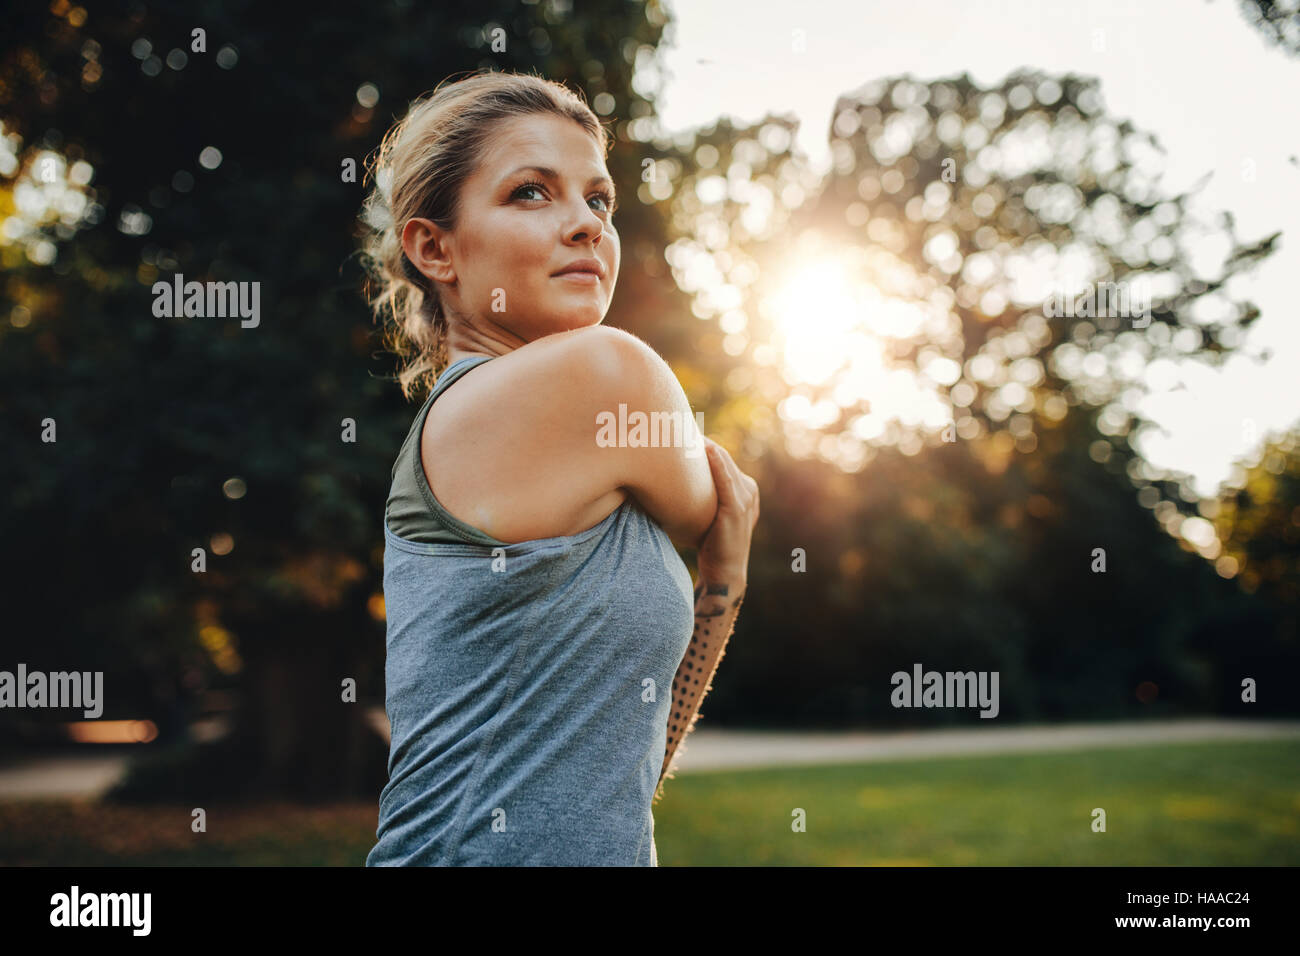 Porträt der schönen jungen Frau im Park trainieren. Kaukasischen Frauen Fitness-Modell morgens zu arbeiten. Stockfoto